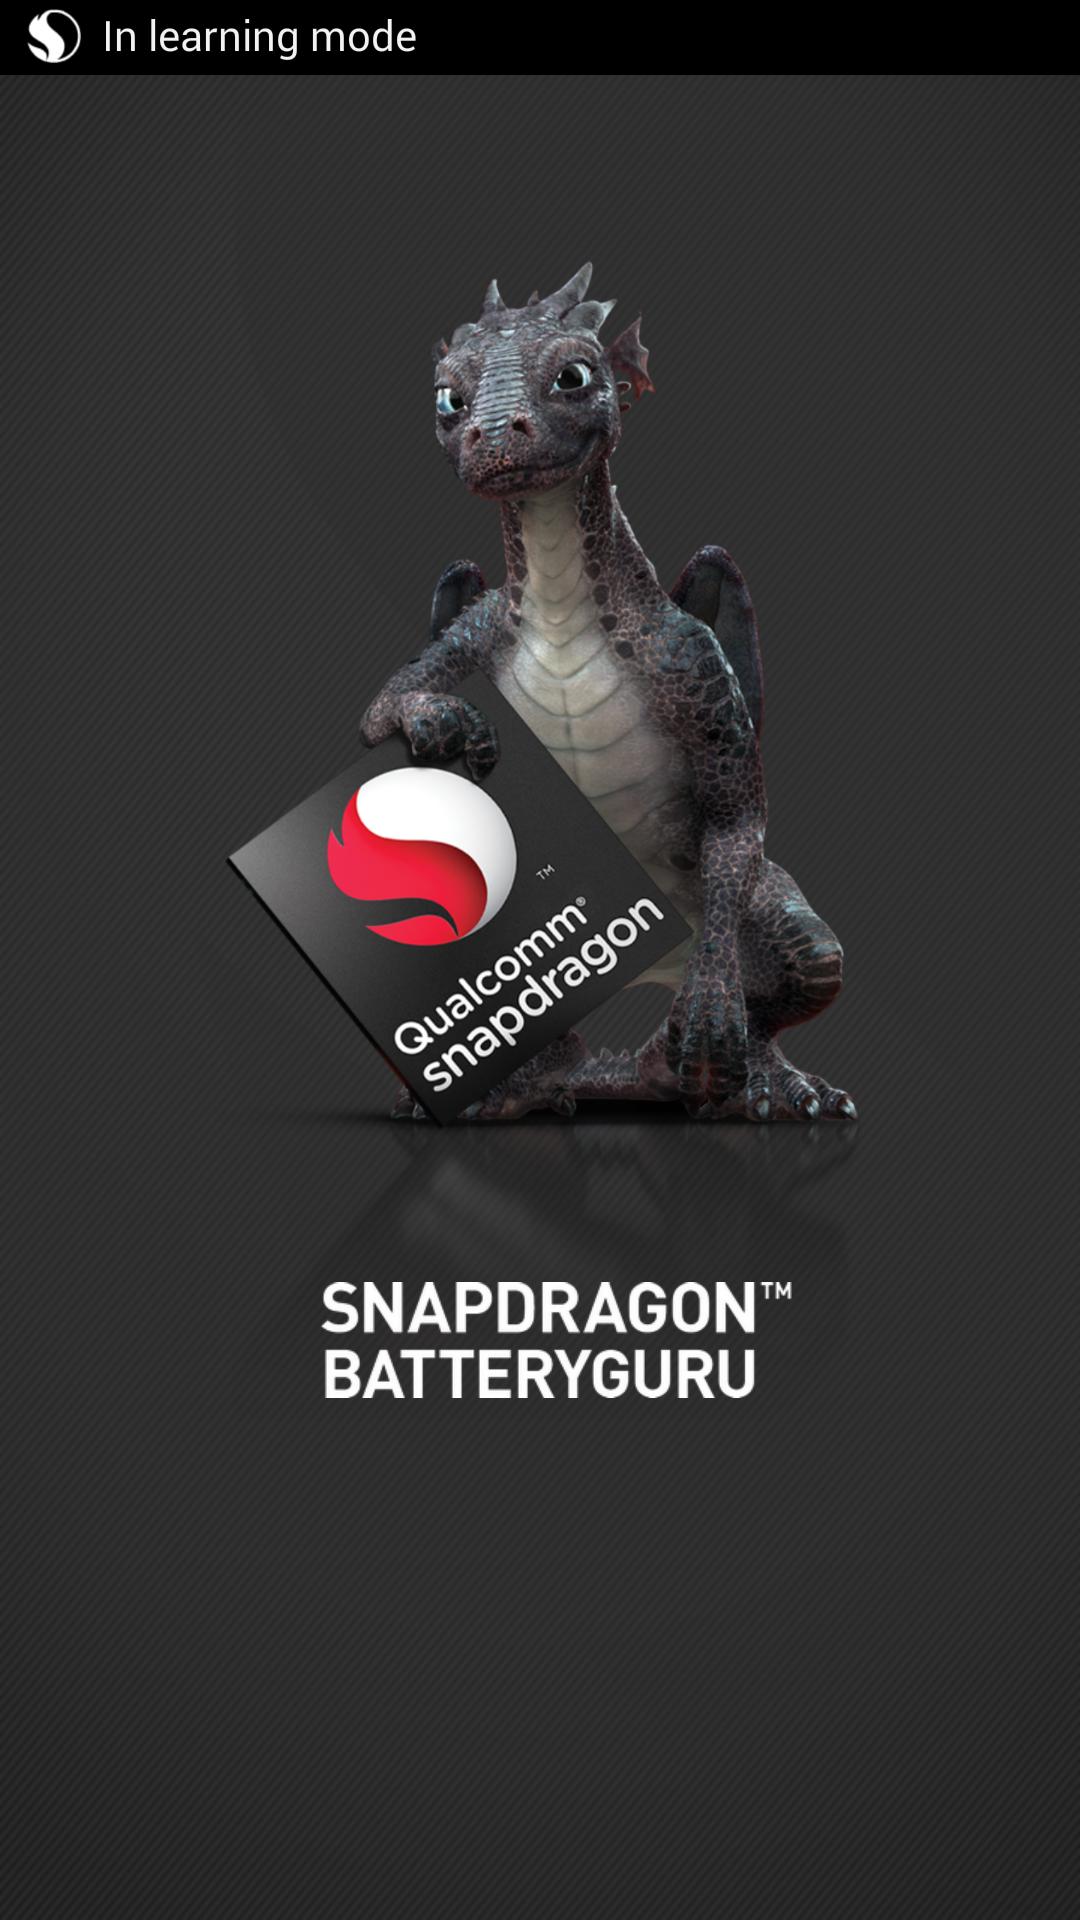 Snapdragon™ BatteryGuru for Android - APK Download